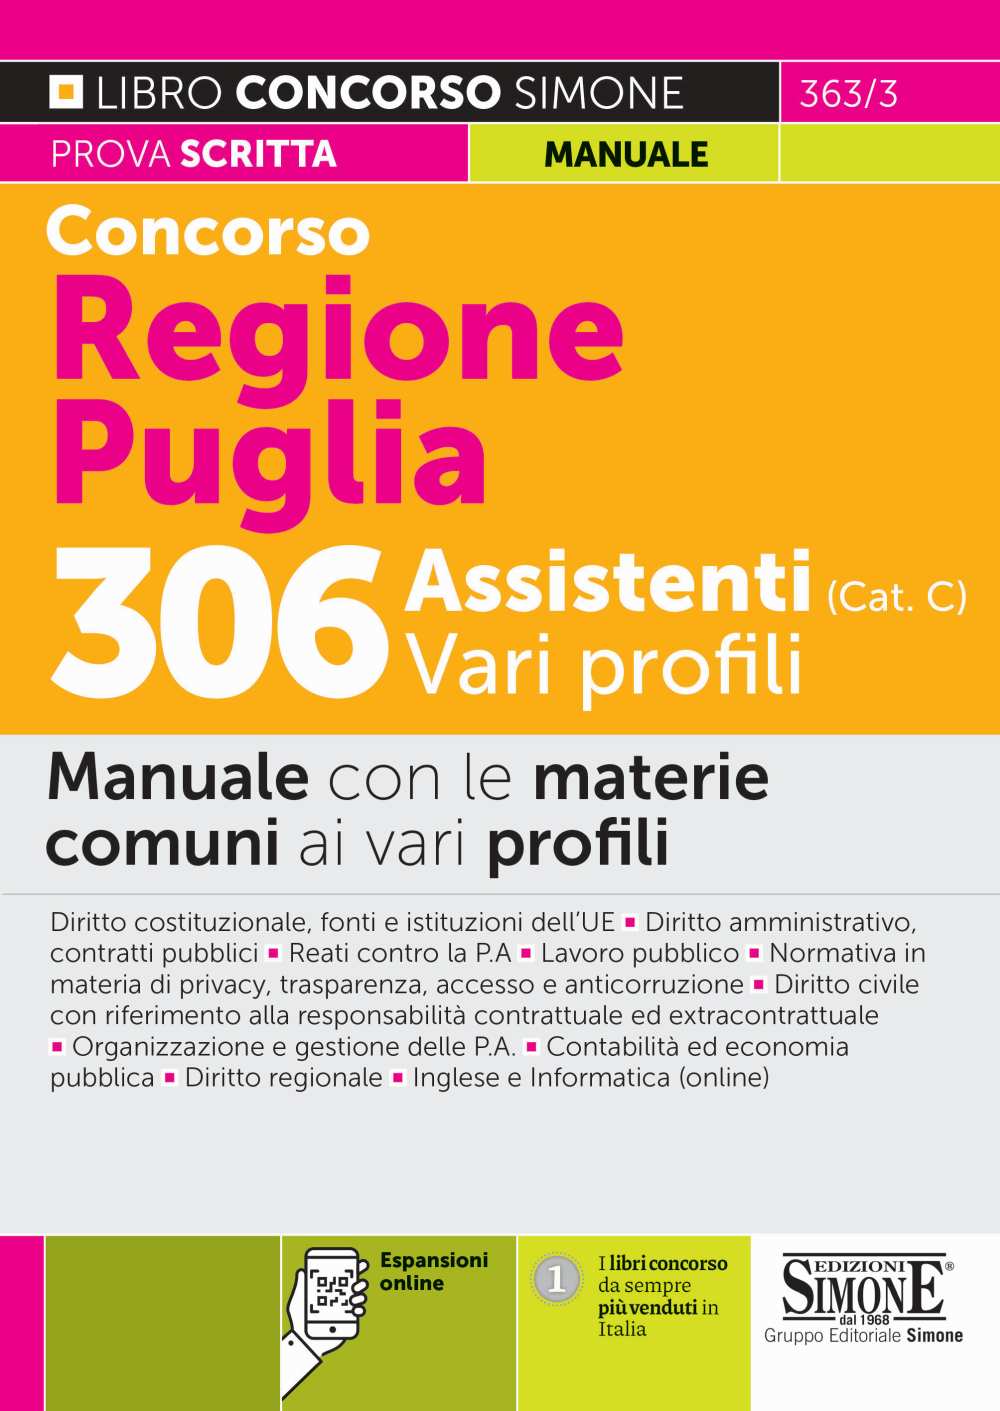 Concorso Regione Puglia 306 Assistenti (Cat. C) Vari profili - Manuale con le materie comuni ai vari profili - 363/3